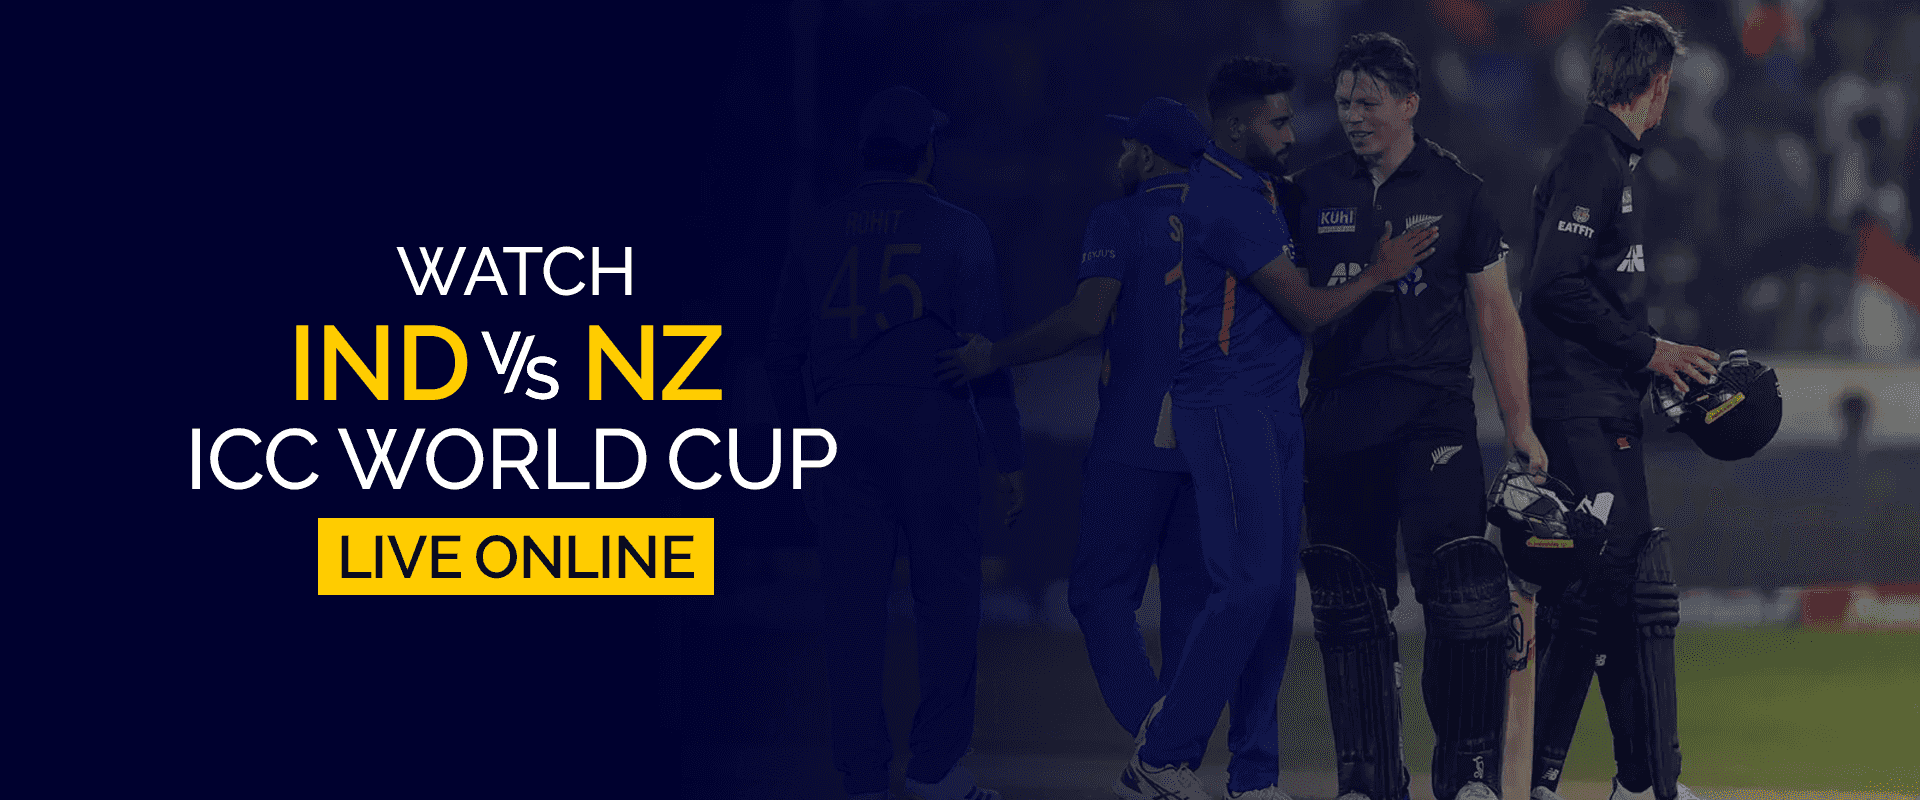 Vea la Copa Mundial ICC India vs Nueva Zelanda en vivo en línea